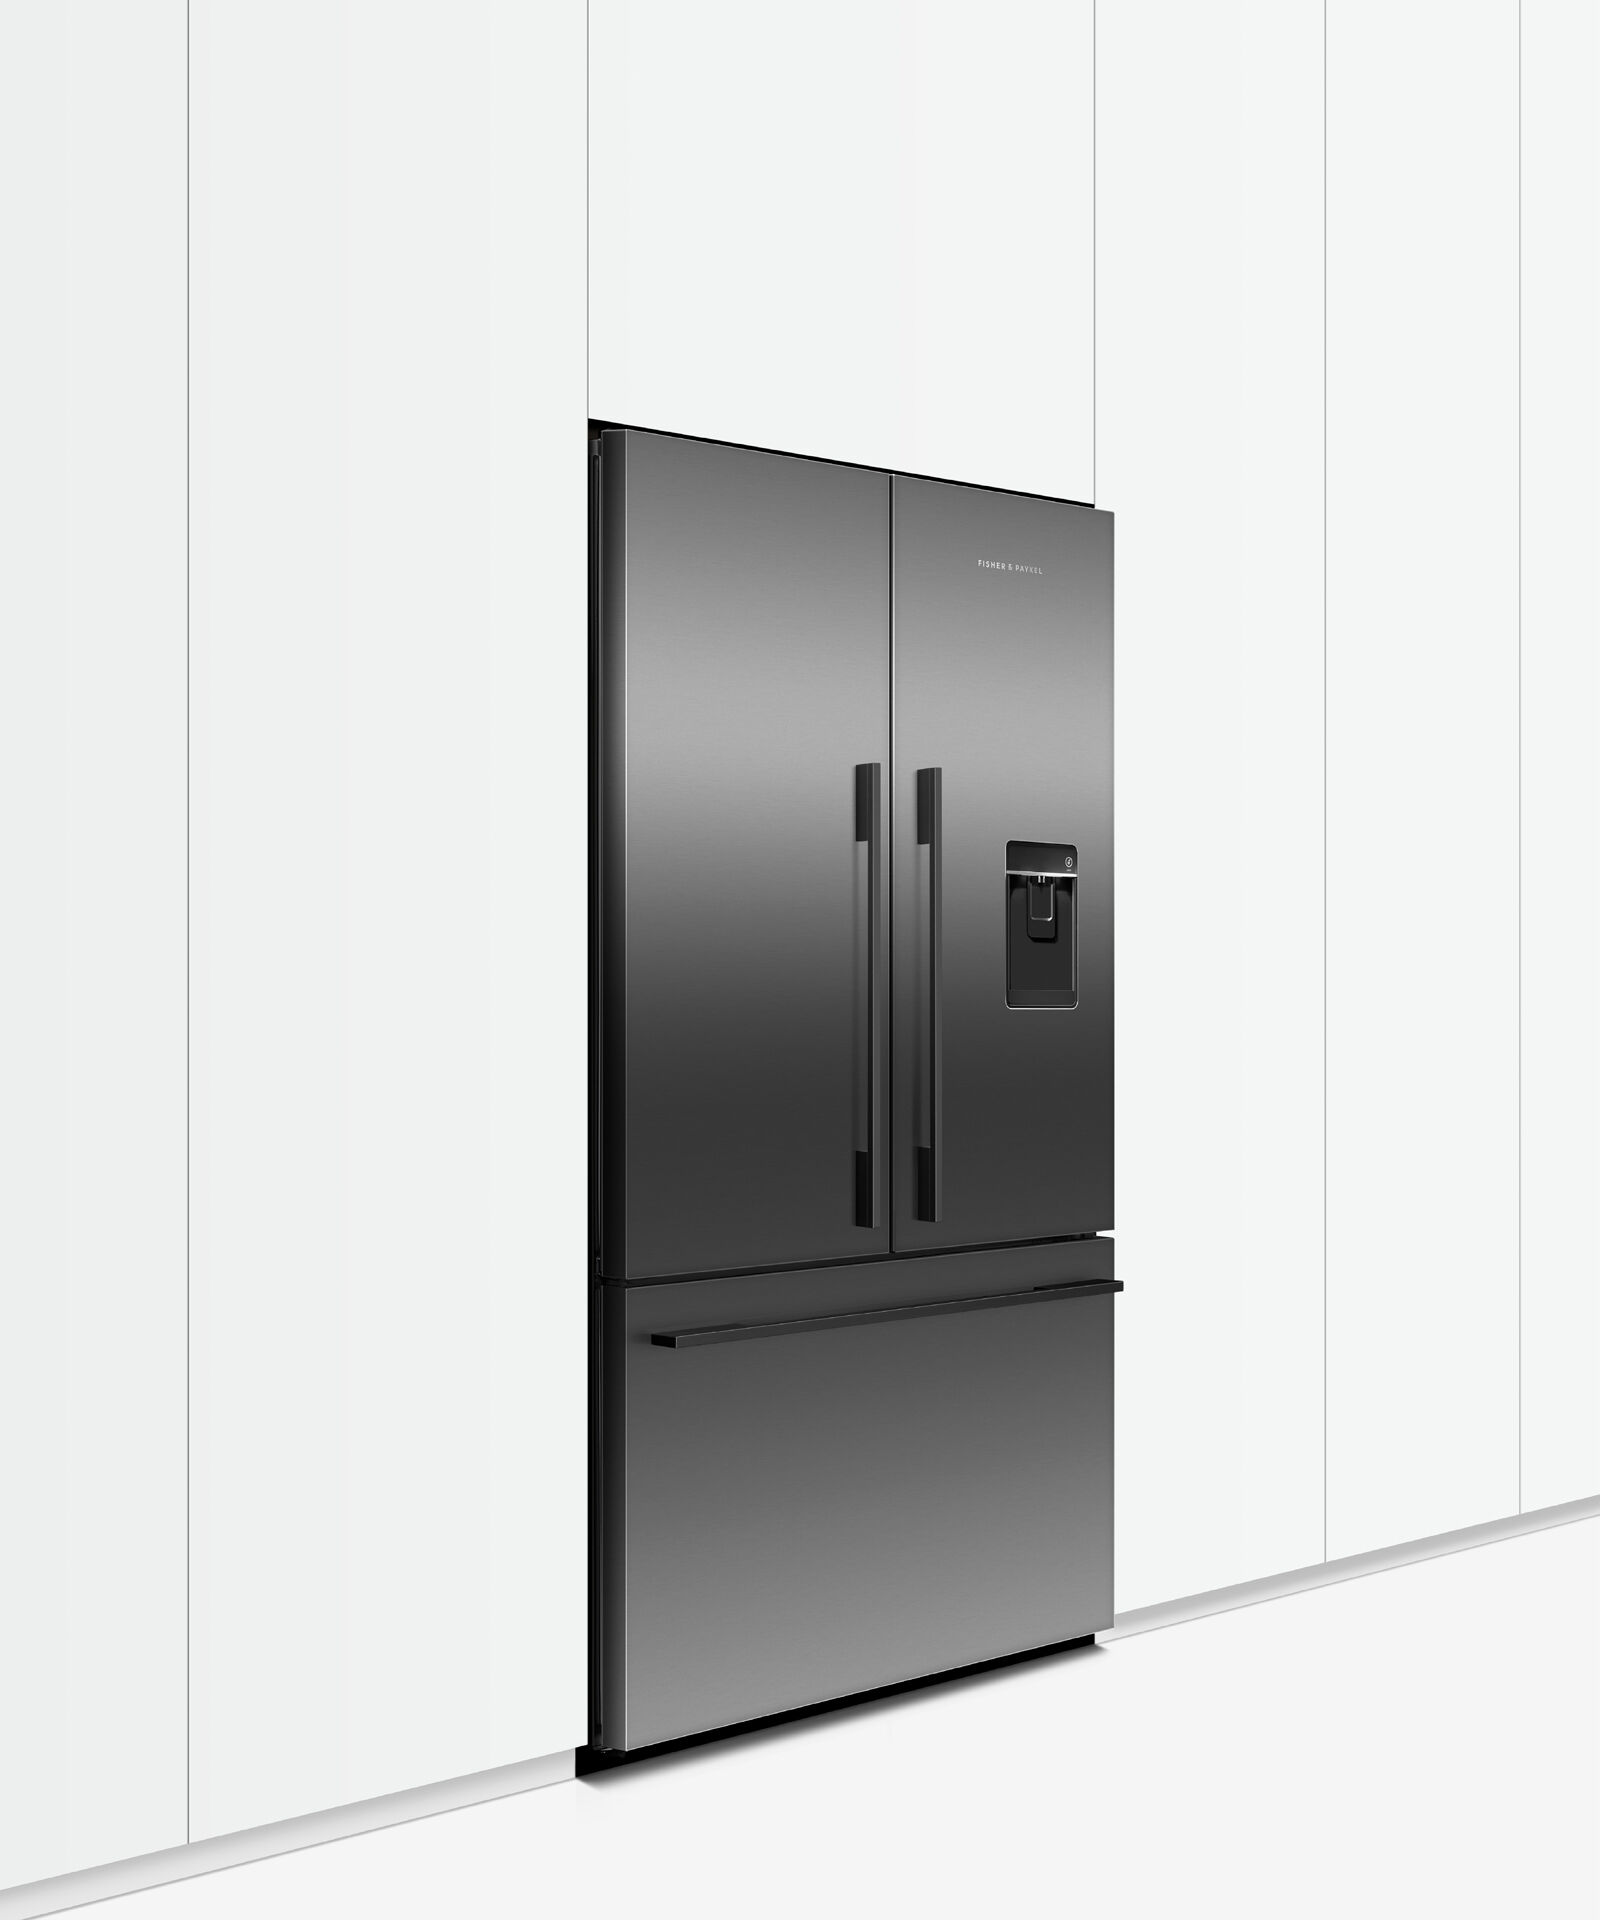 Freestanding French Door Refrigerator Freezer, 90cm, Ice & Water gallery image 6.0